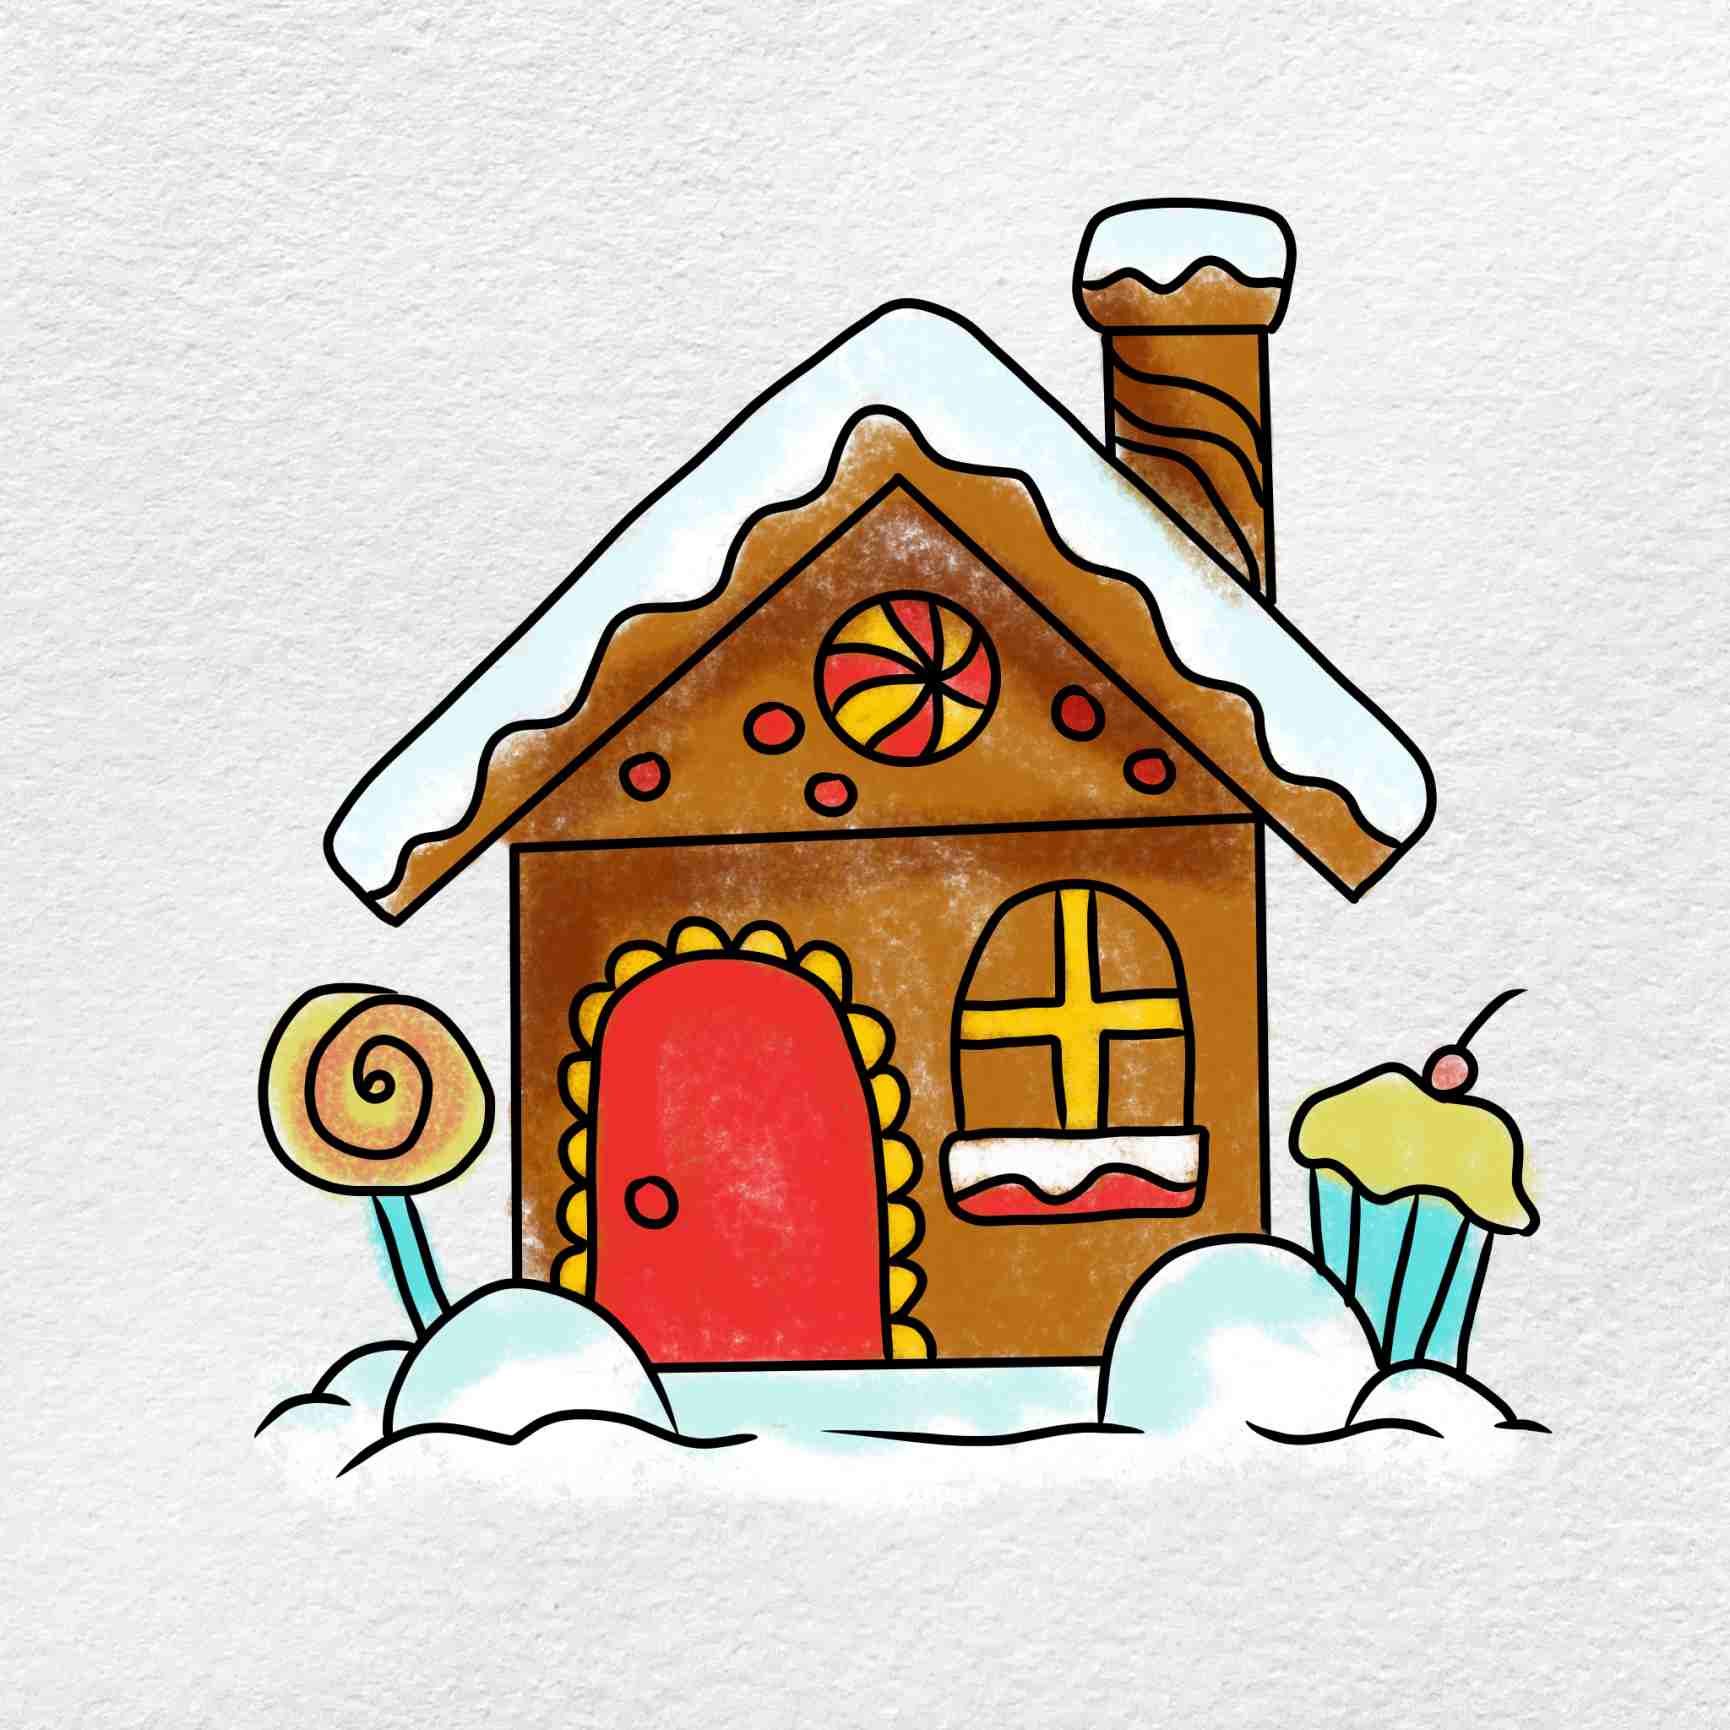 Một căn nhà bằng tuyết rực rỡ sắc màu sẽ làm bạn ngất ngây khi chiêm ngưỡng. Bức tranh vẽ ngôi nhà tuyết sẽ tựa như một món quà của thiên nhiên tặng cho chúng ta, một món quà không thể quên.